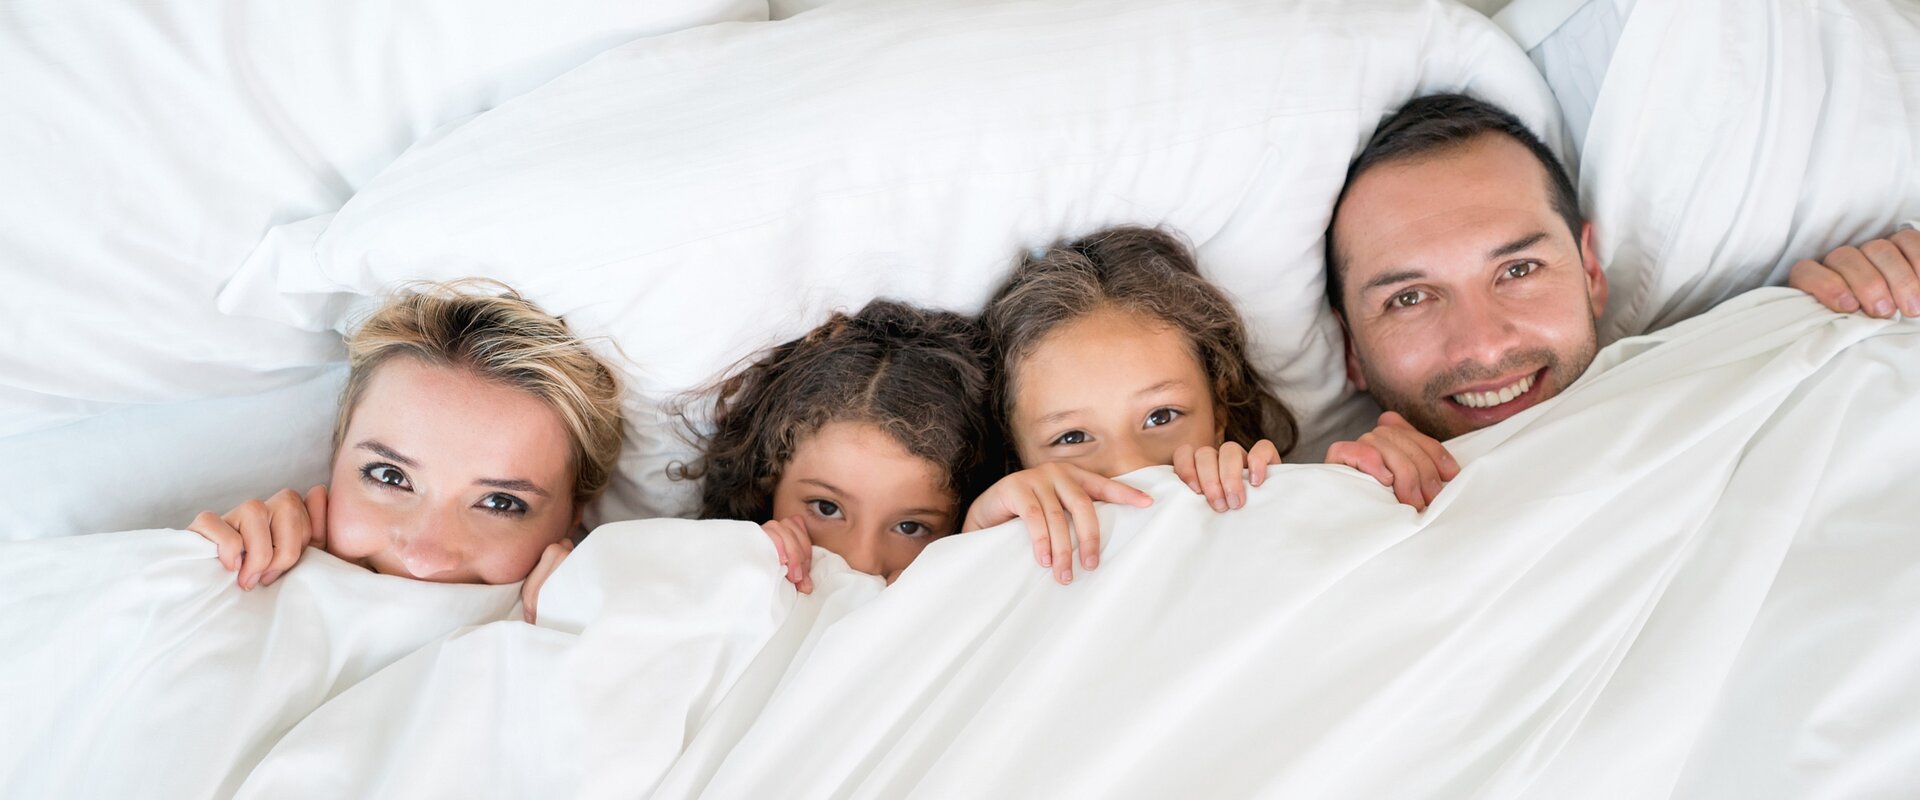 Eine Familie Frau, zwei Kinder und ein Mann, liegt nebeneinander in einem großen Bett. Die weiße Bettdecke haben sie mit den Händen bis unters Kinn gezogen, sodass nur die Köpfe hervorschauen.